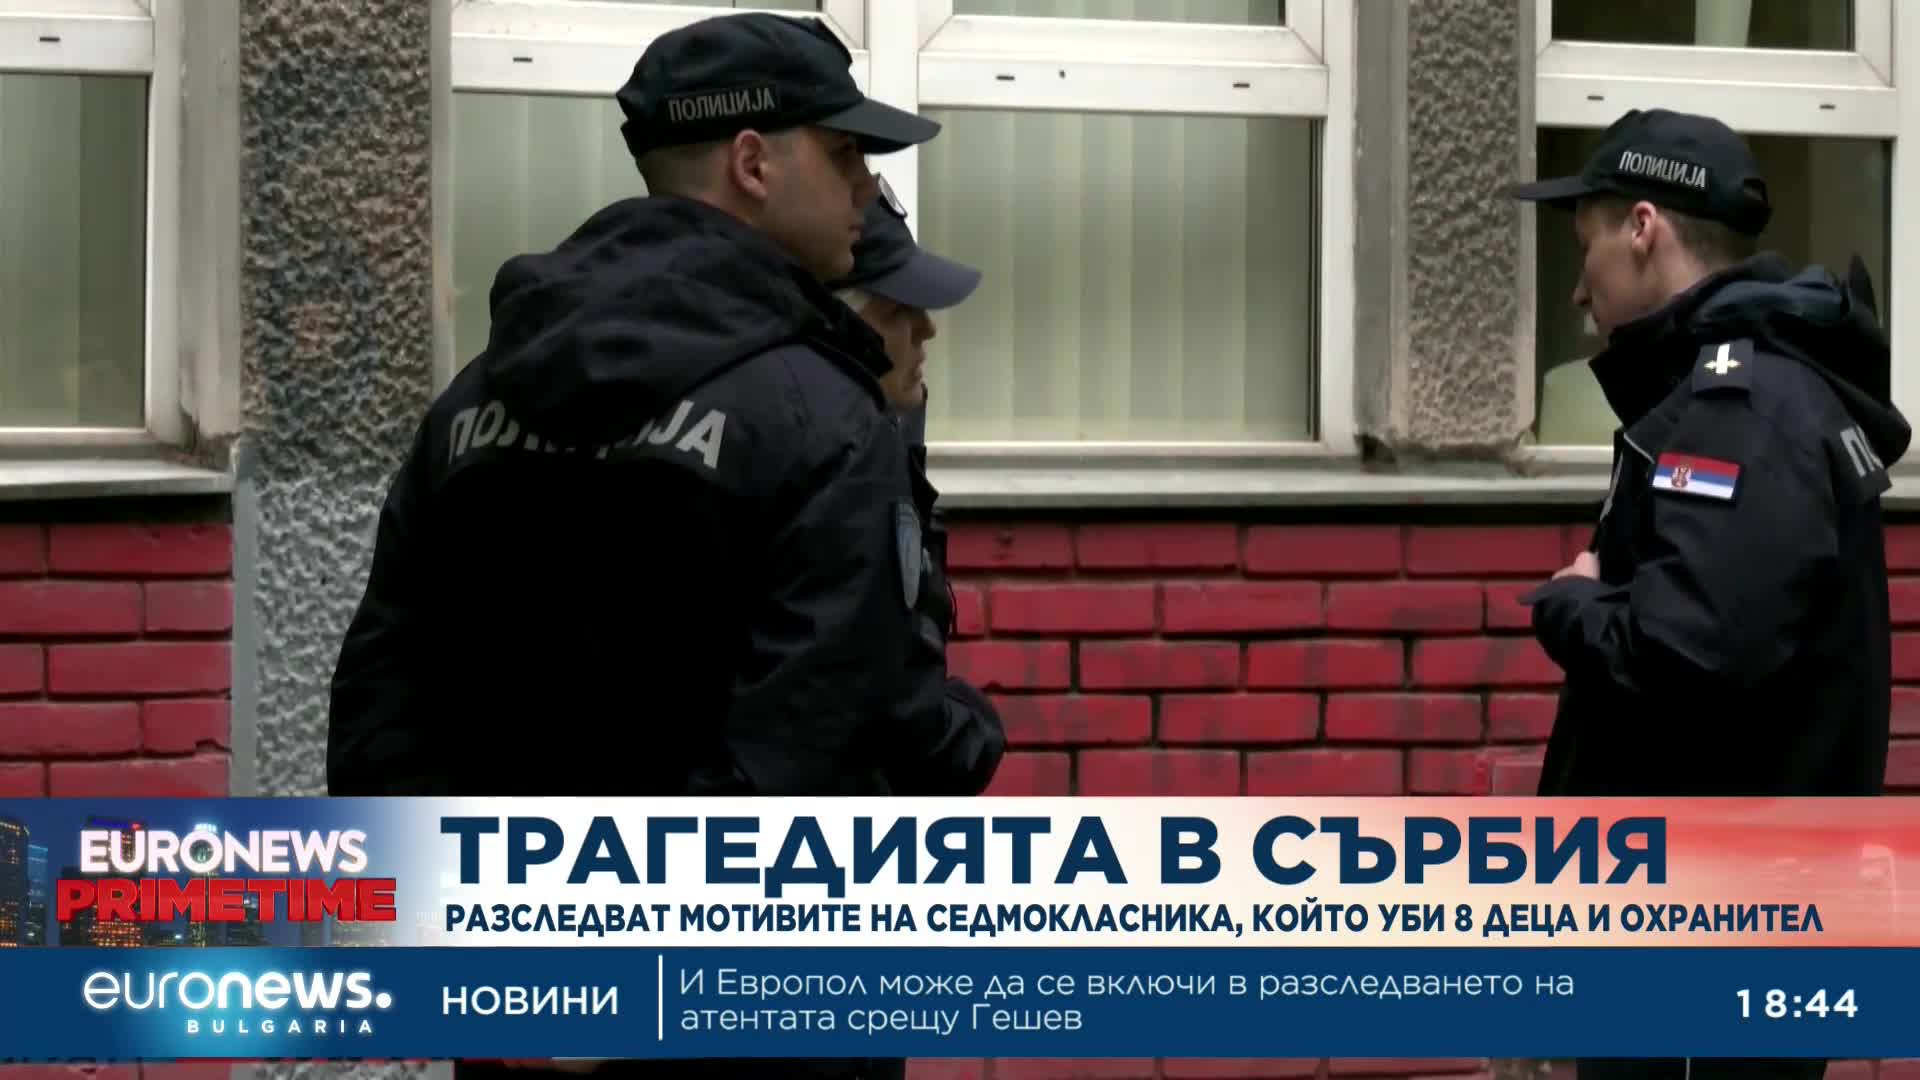 Разследват мотивите на седмокласника, който уби 8 деца и охранител в Белград